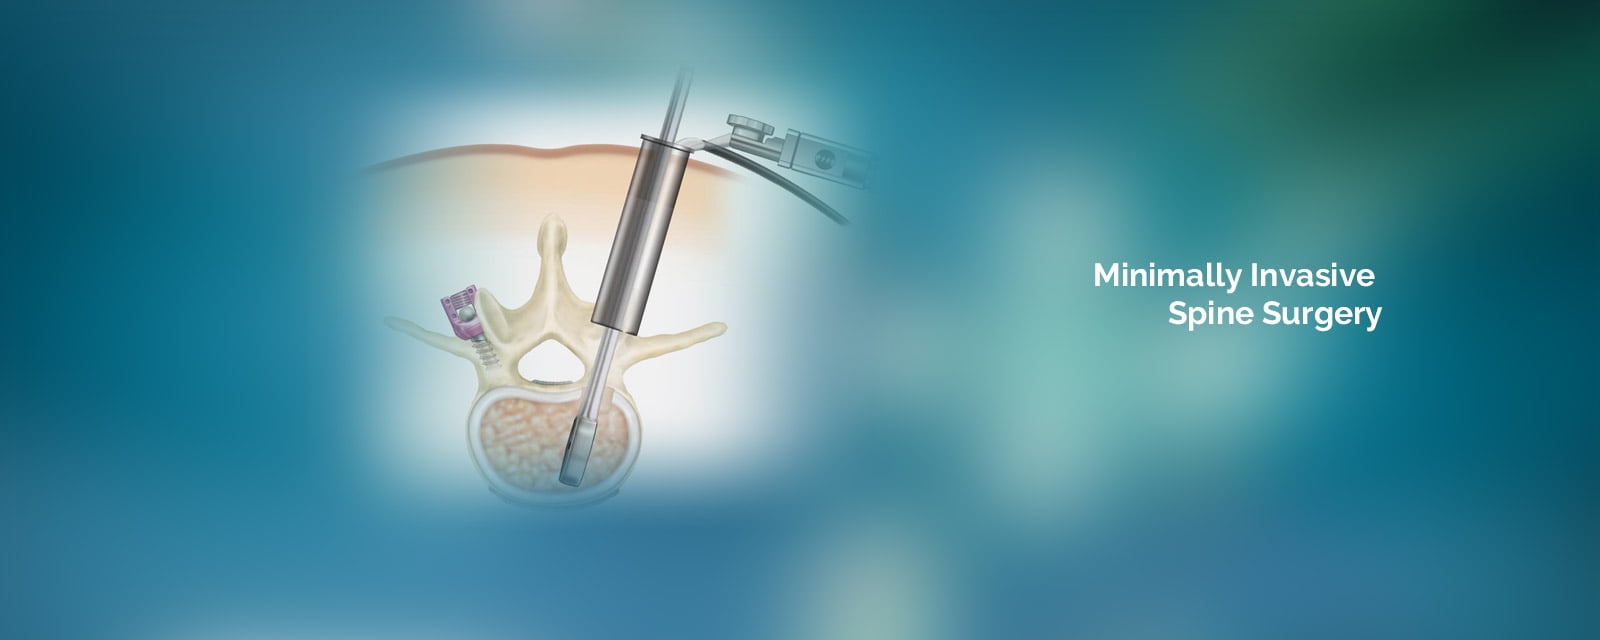 Minimally Invasive Spine Surgery india